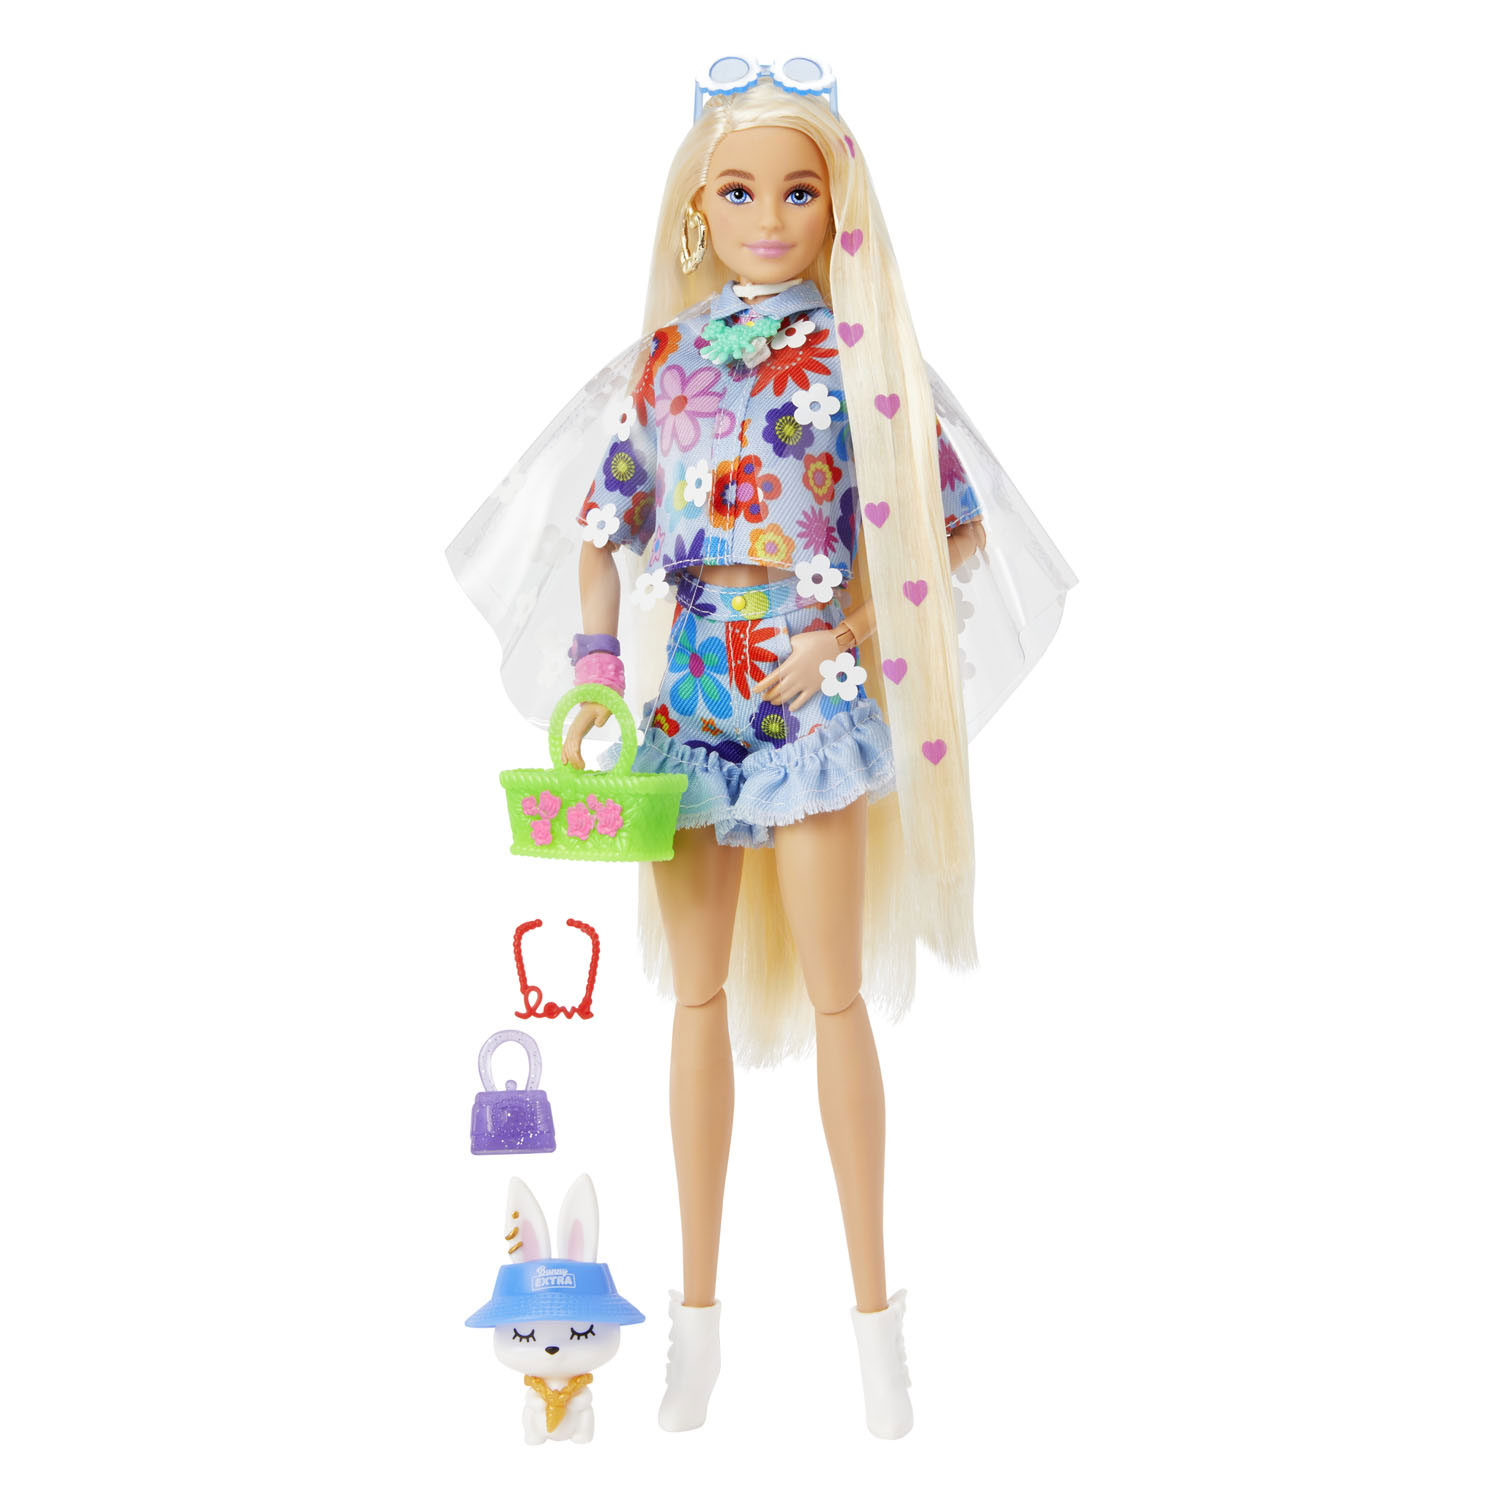 Humaan Moeras Walter Cunningham Barbie Extra Pop - Flower Power online kopen? | Lobbes Speelgoed